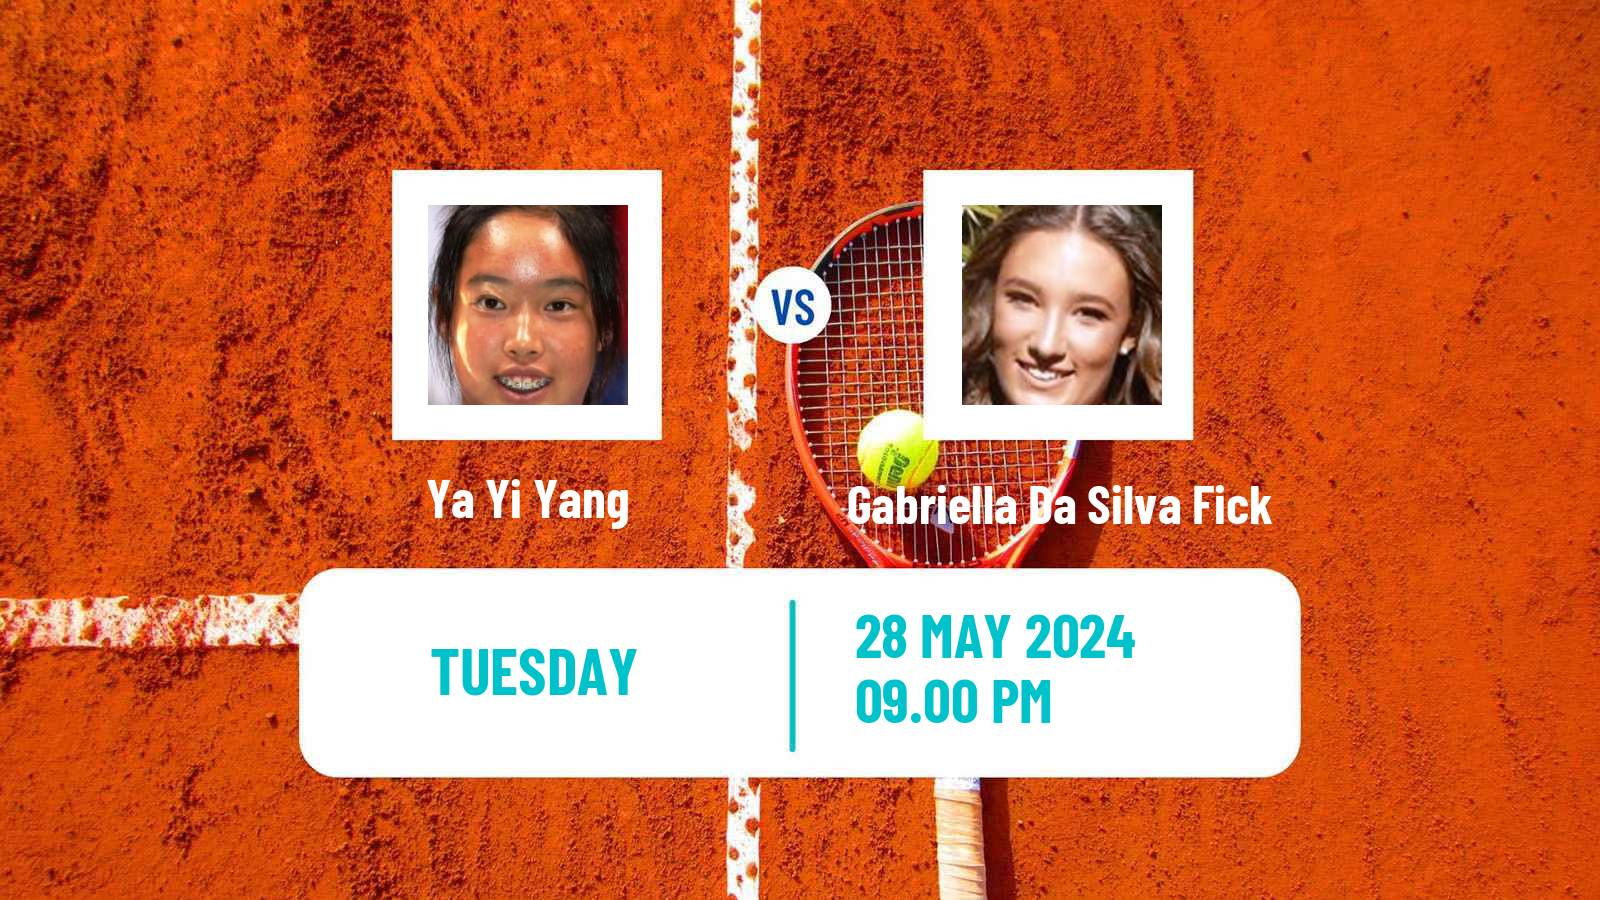 Tennis ITF W35 Changwon Women Ya Yi Yang - Gabriella Da Silva Fick